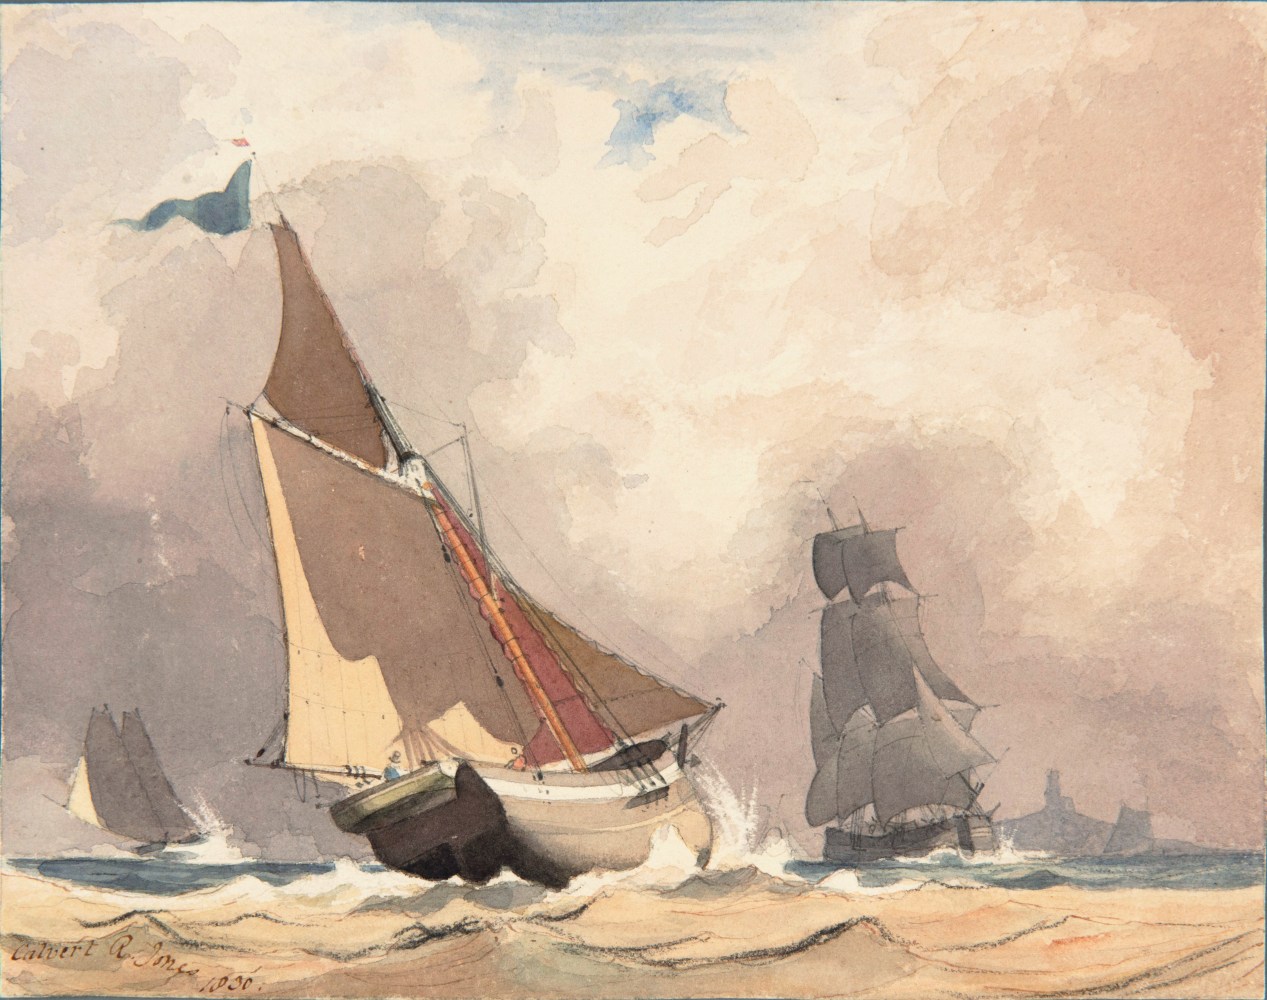 Rev. Calvert Richard JONES (Welsh, 1802-1877) Study of sailing vessels*, 1830 Watercolour 16.3 x 20.4 cm Signed and dated &quot;Calvert R. Jones 1830&quot; in brown ink